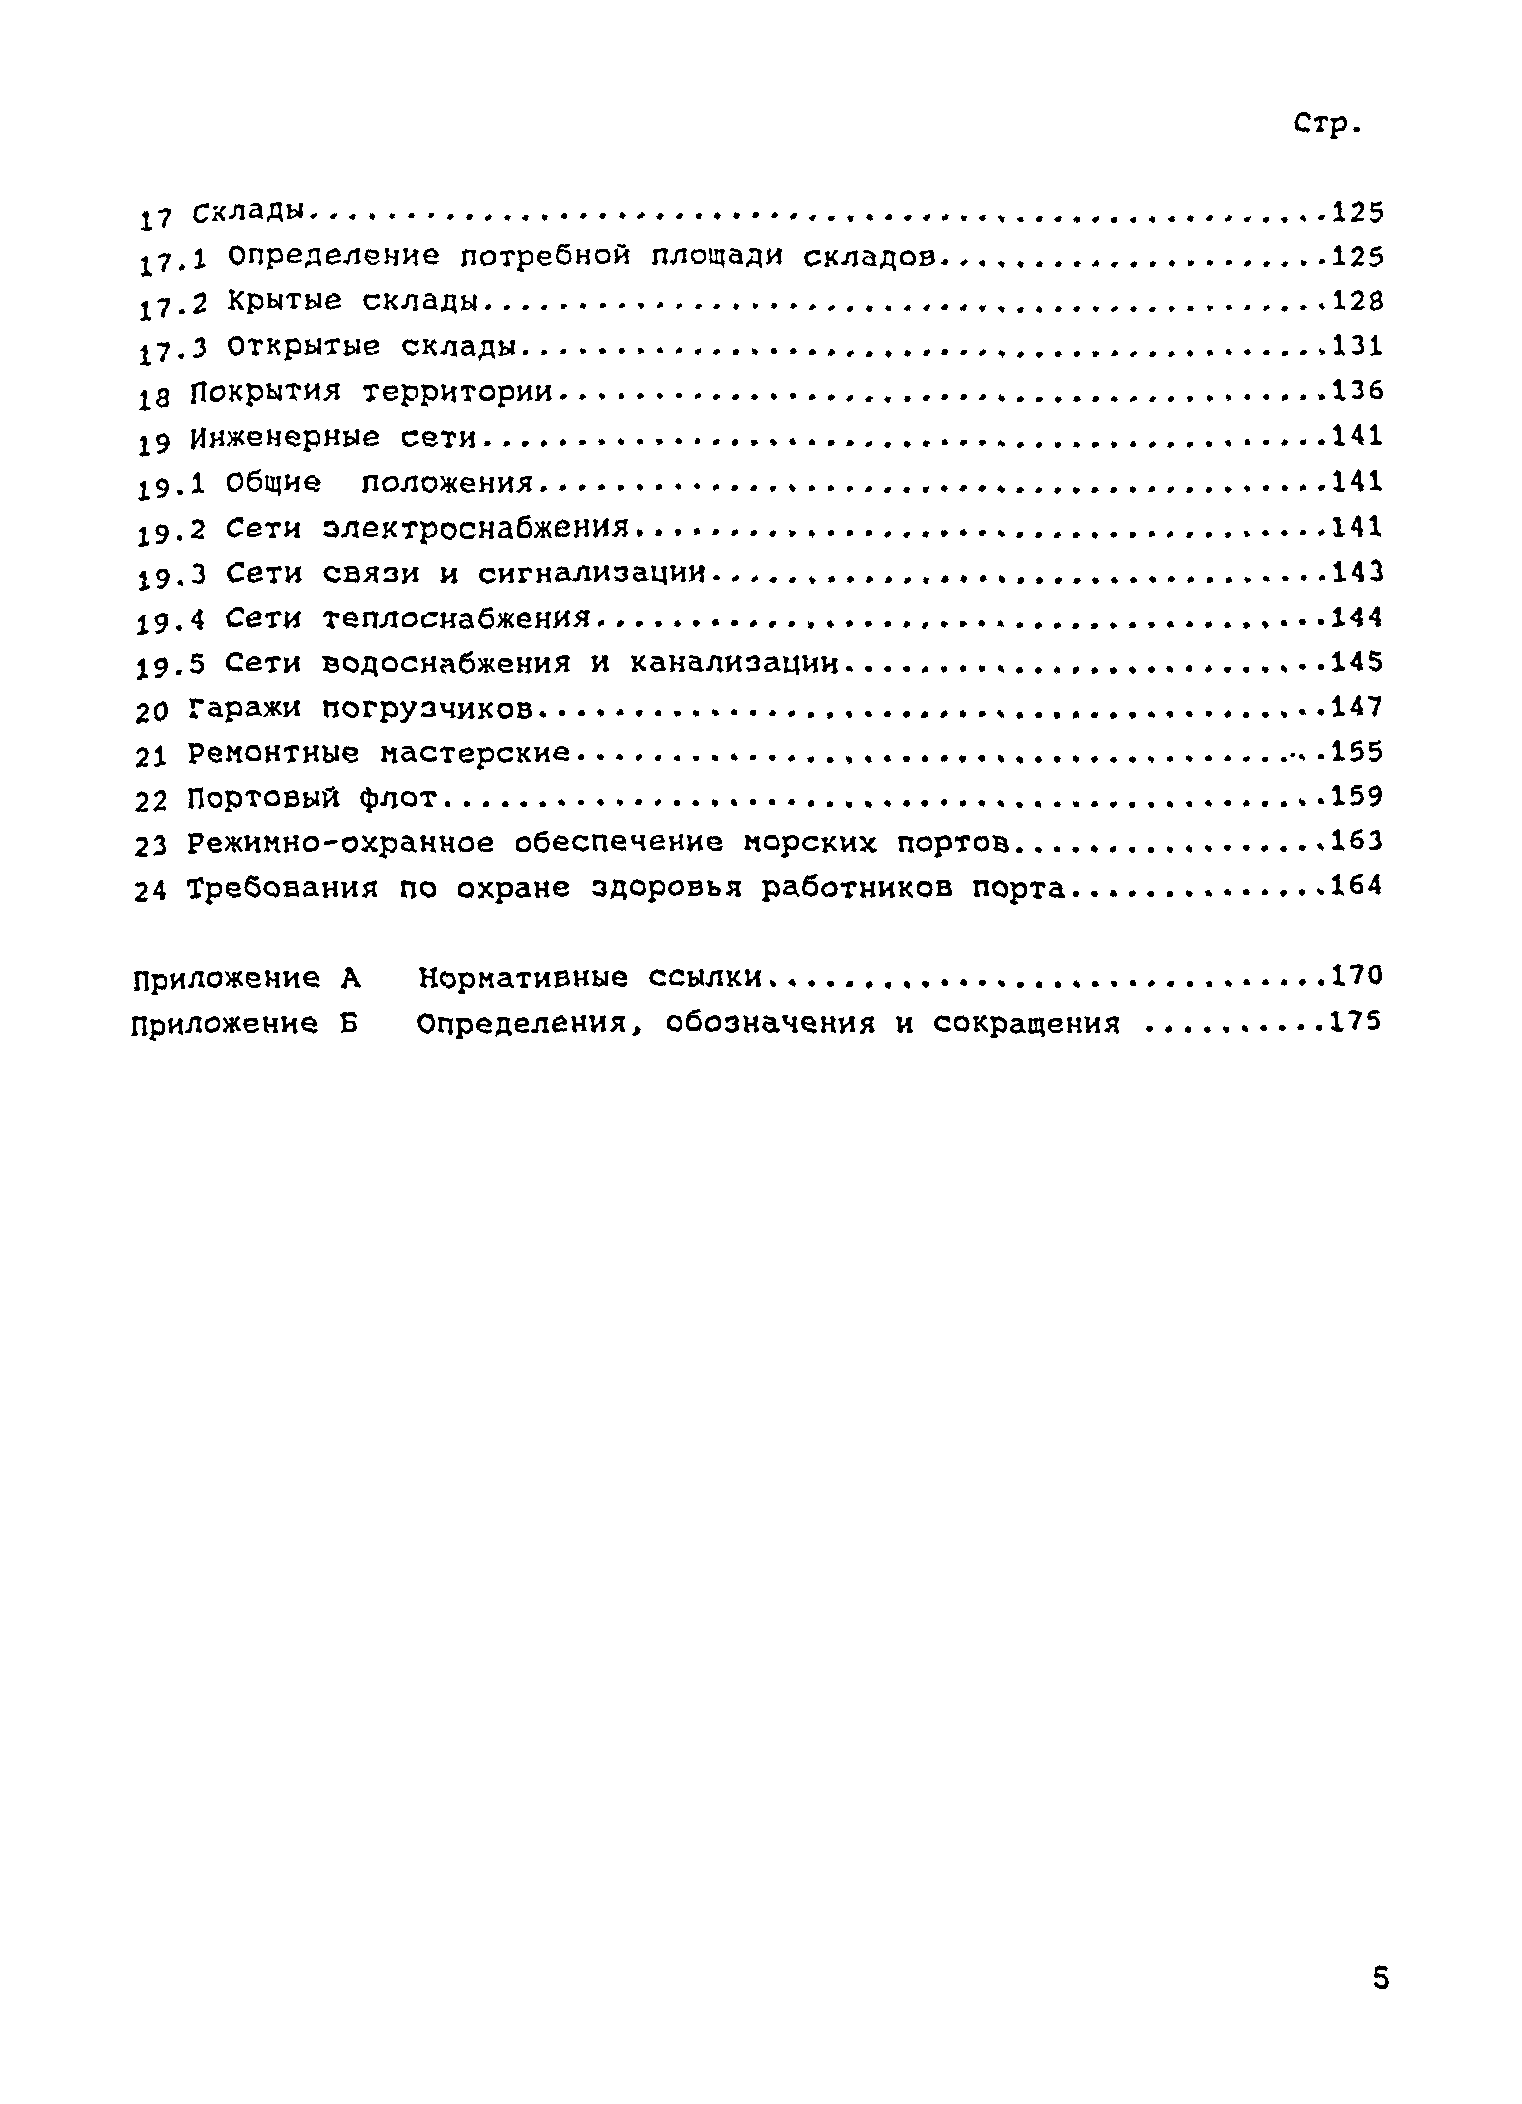 РД 31.3.05-97